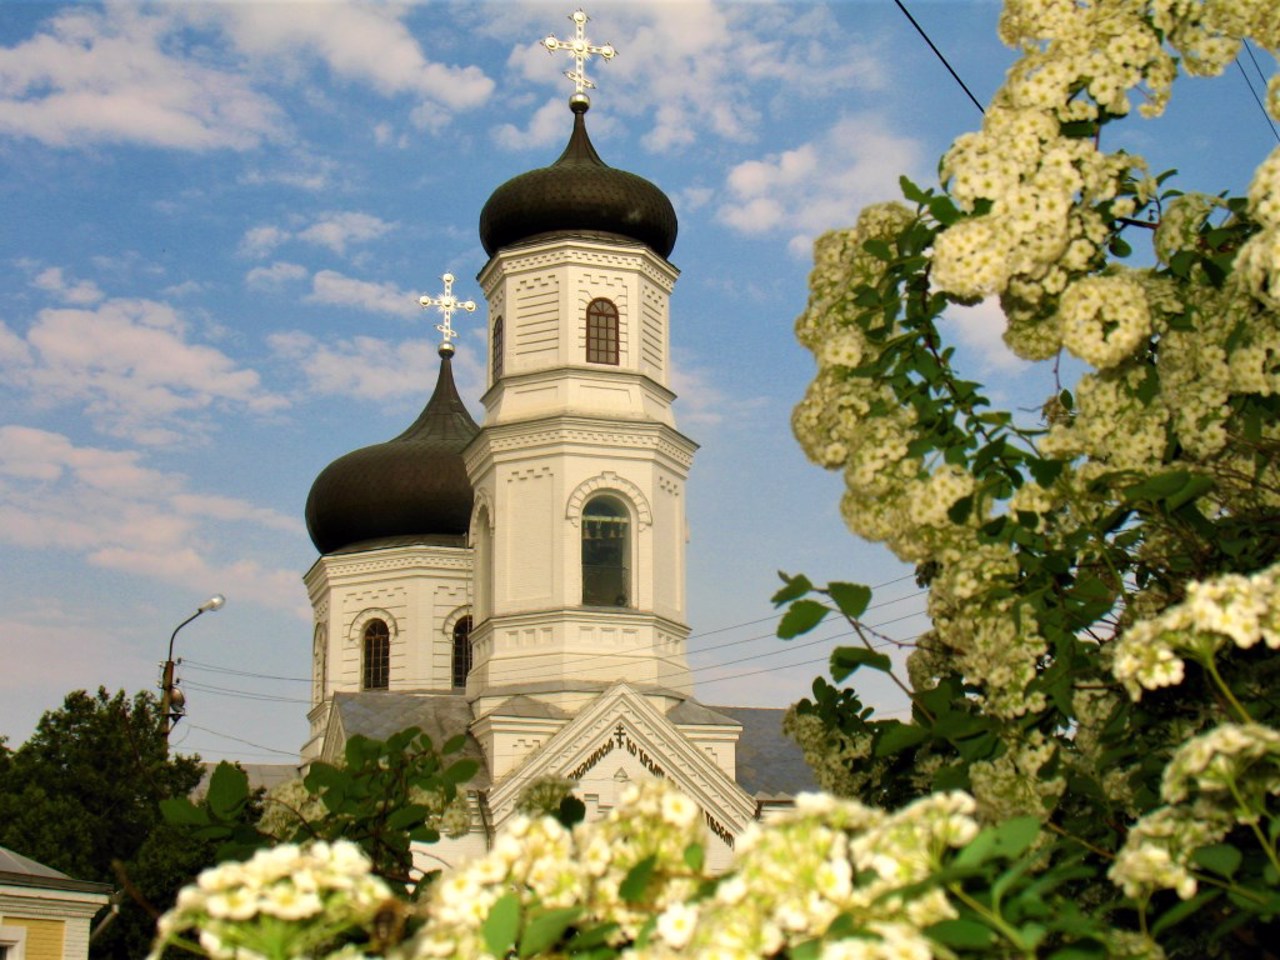 Спасо-Преображенский собор, Никополь